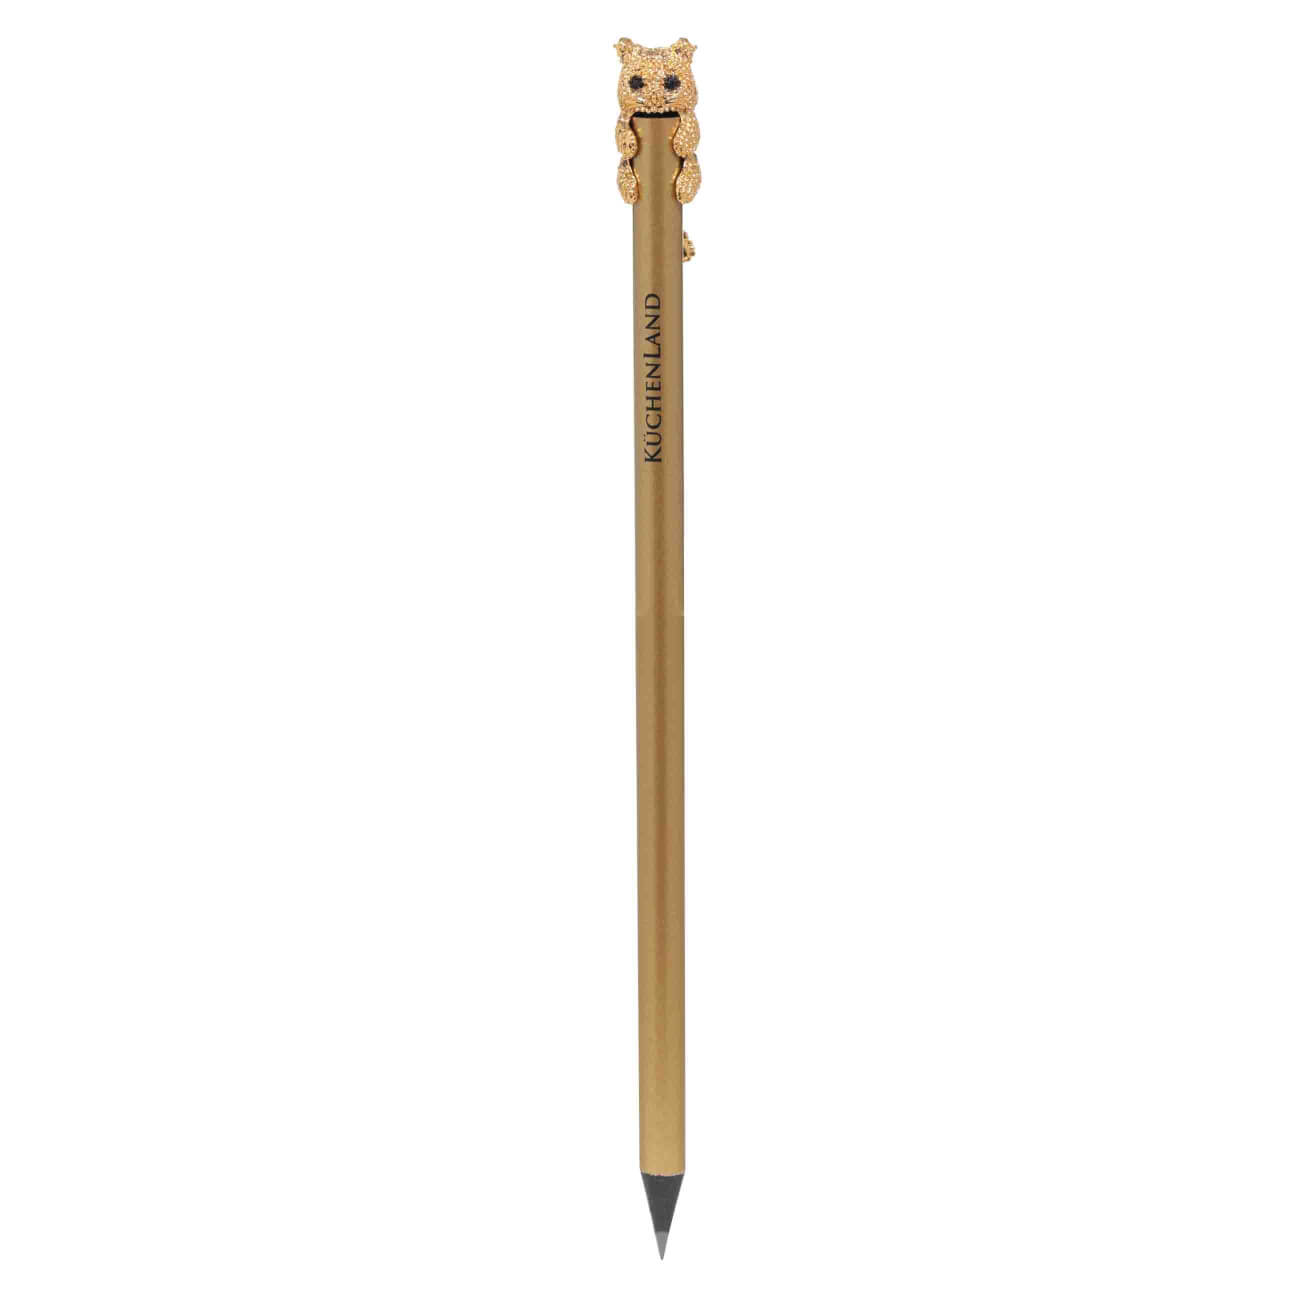 Карандаш, 18 см, чернографитный, с фигуркой, золотистый, Кот, Draw карандаш чернографитный cretacolor fine art 6в